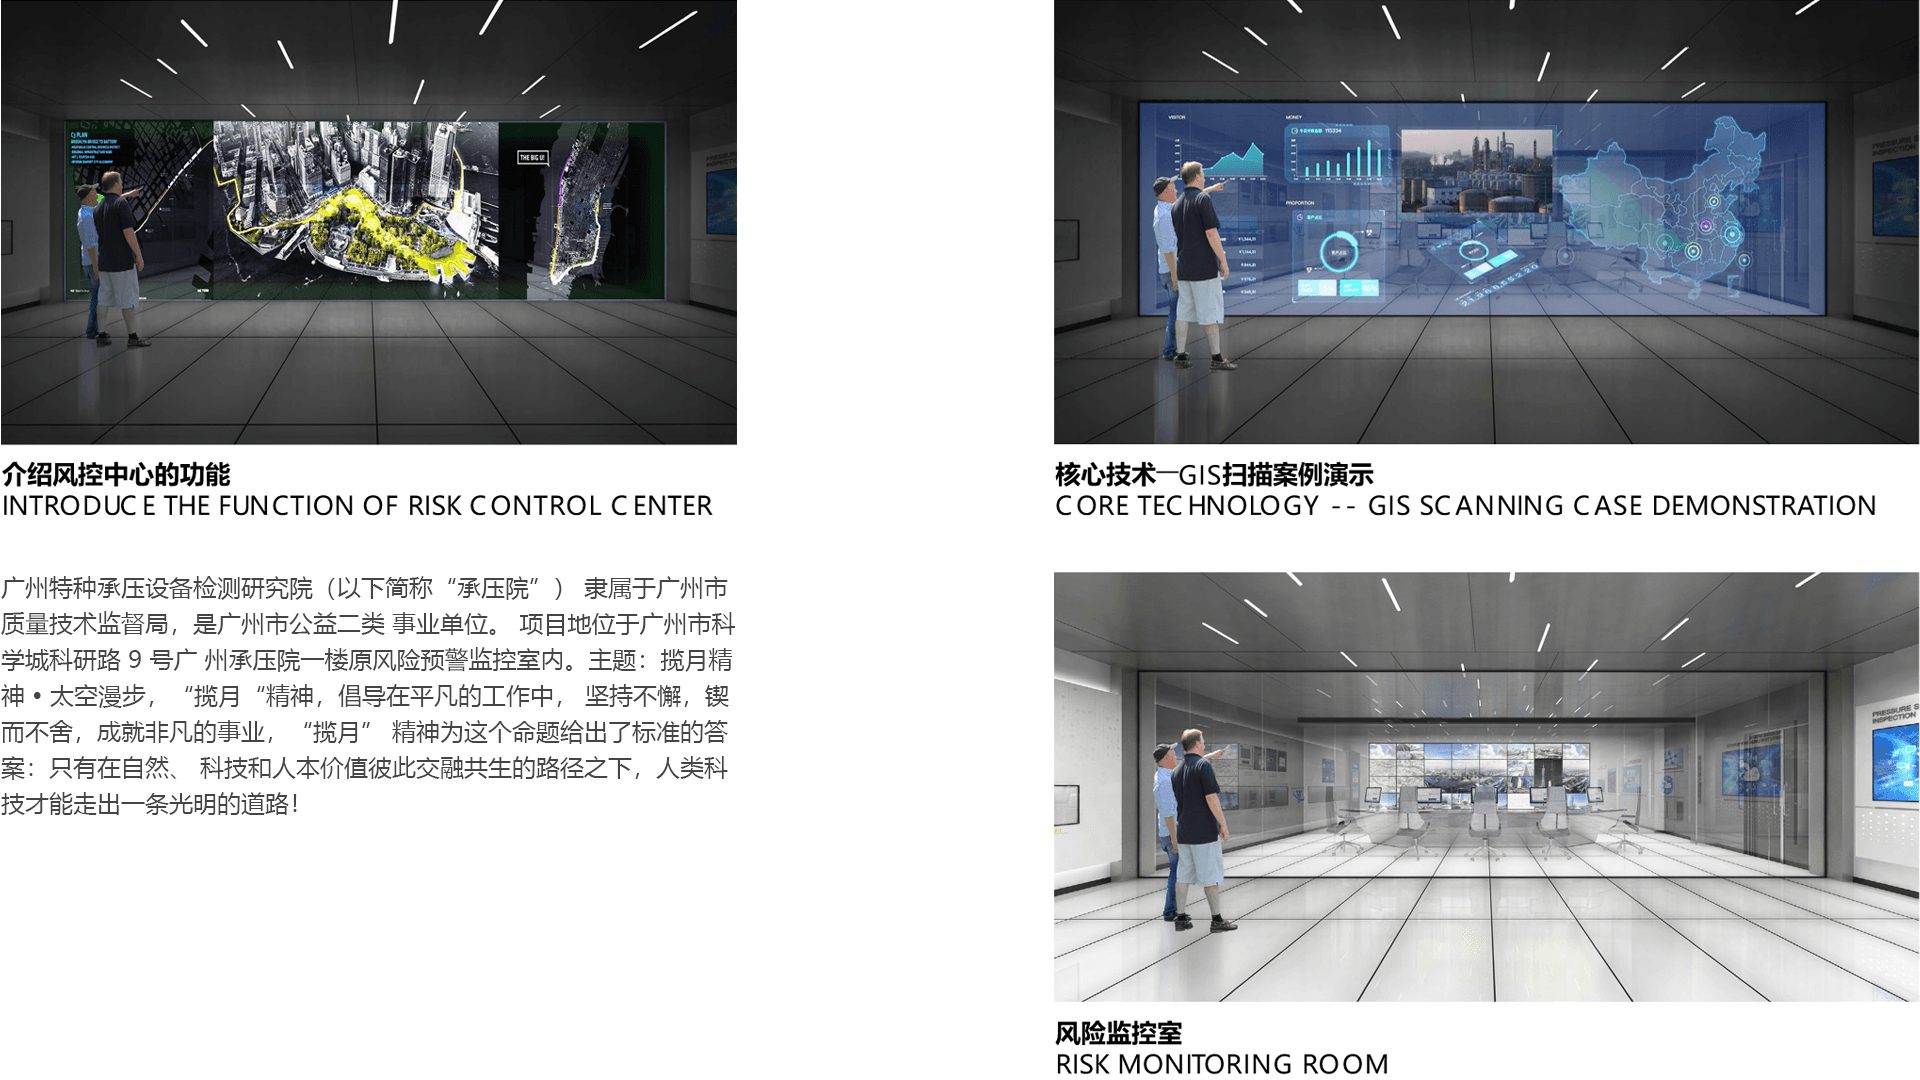 广州承压院信息化新技术展示体验中心2.png